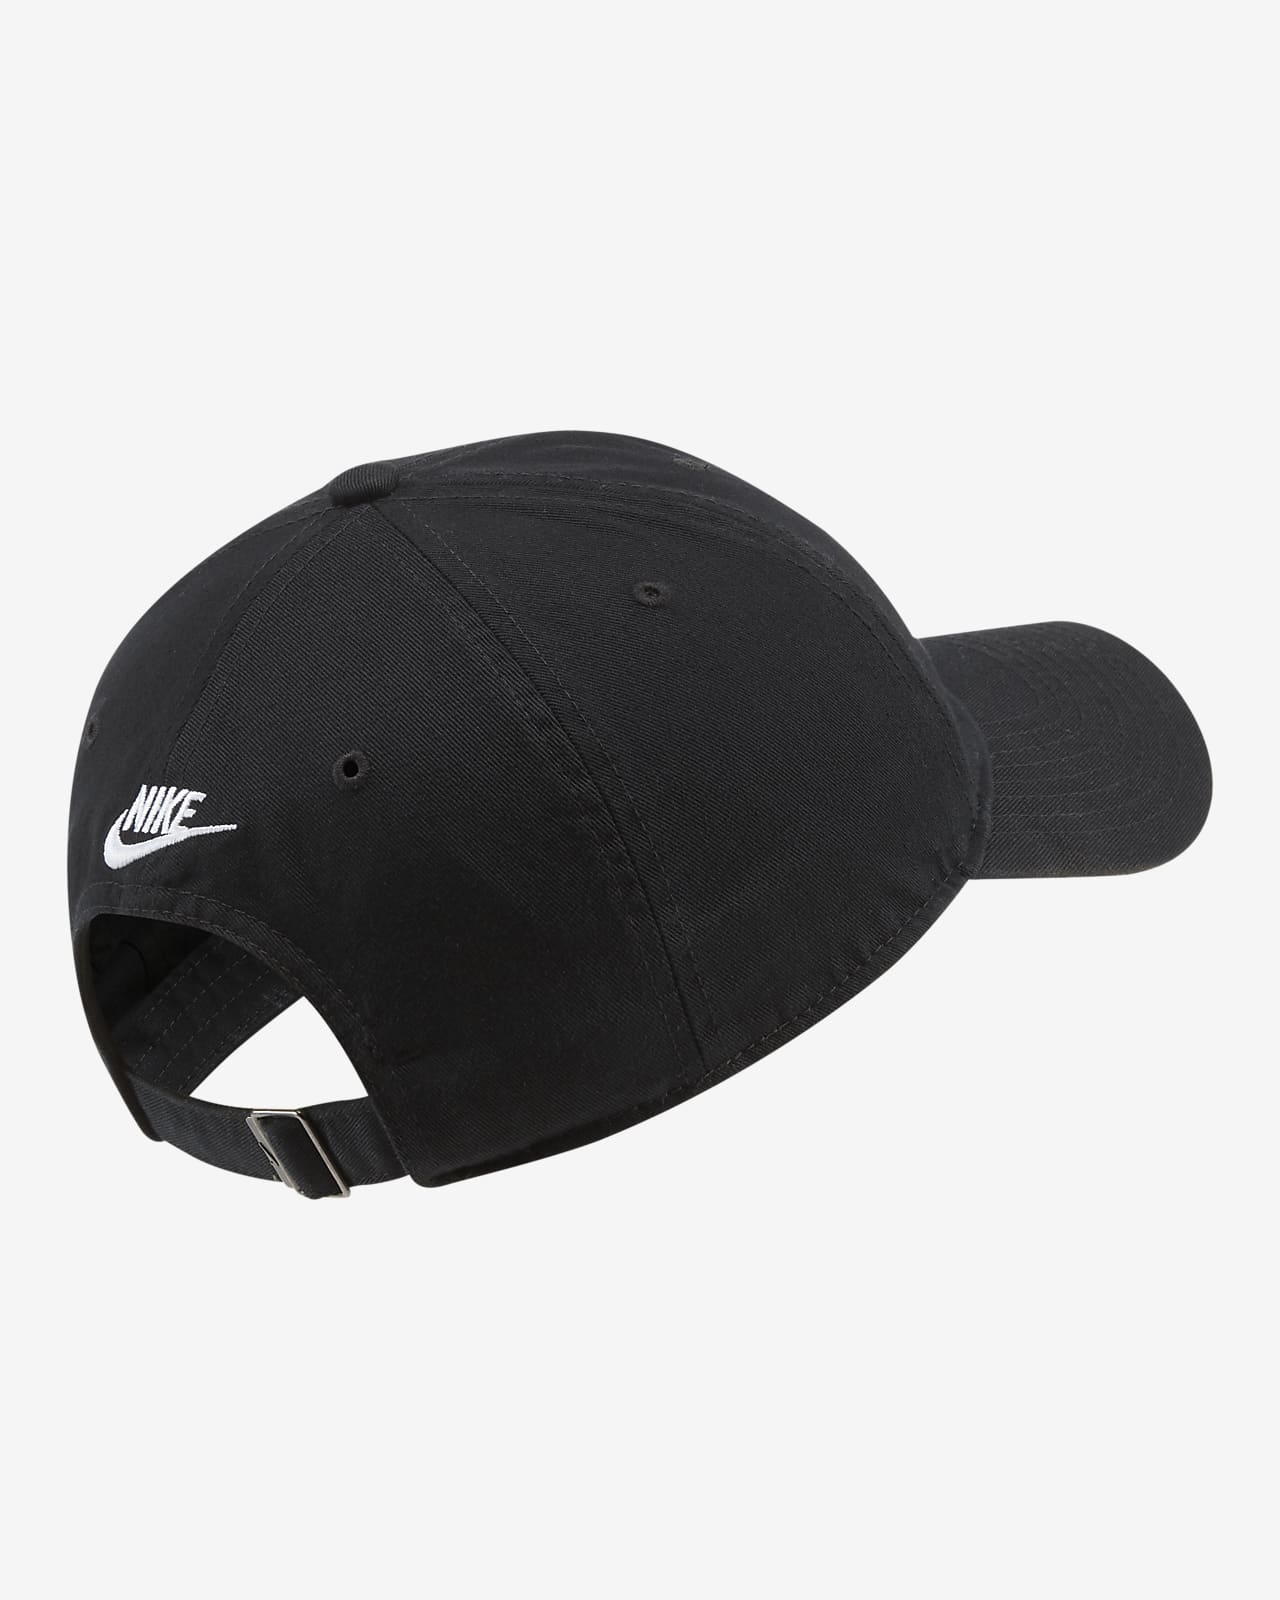 Christus blaas gat periscoop Nike Sportswear Heritage86 Adjustable Hat. Nike UK